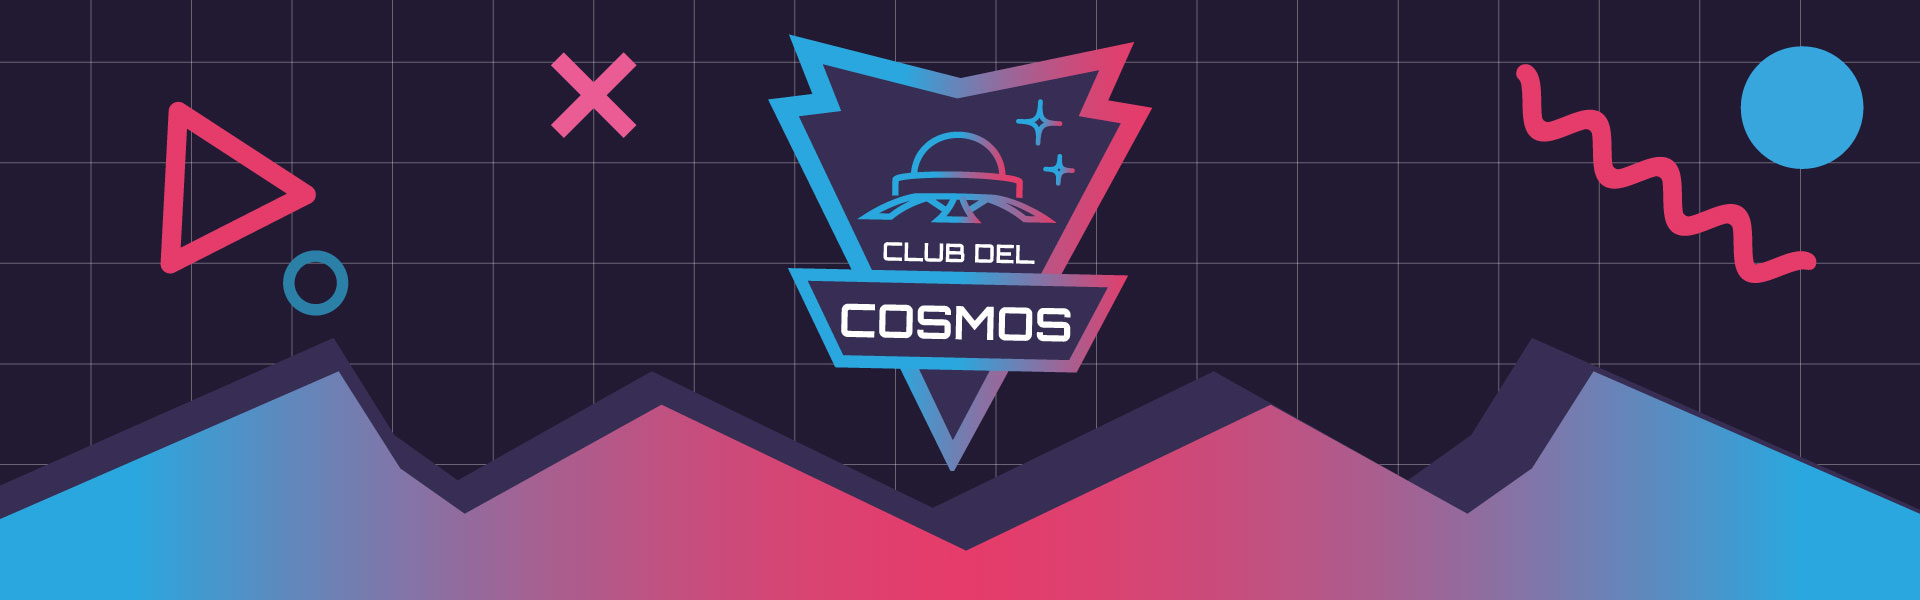 Club del Cosmos 